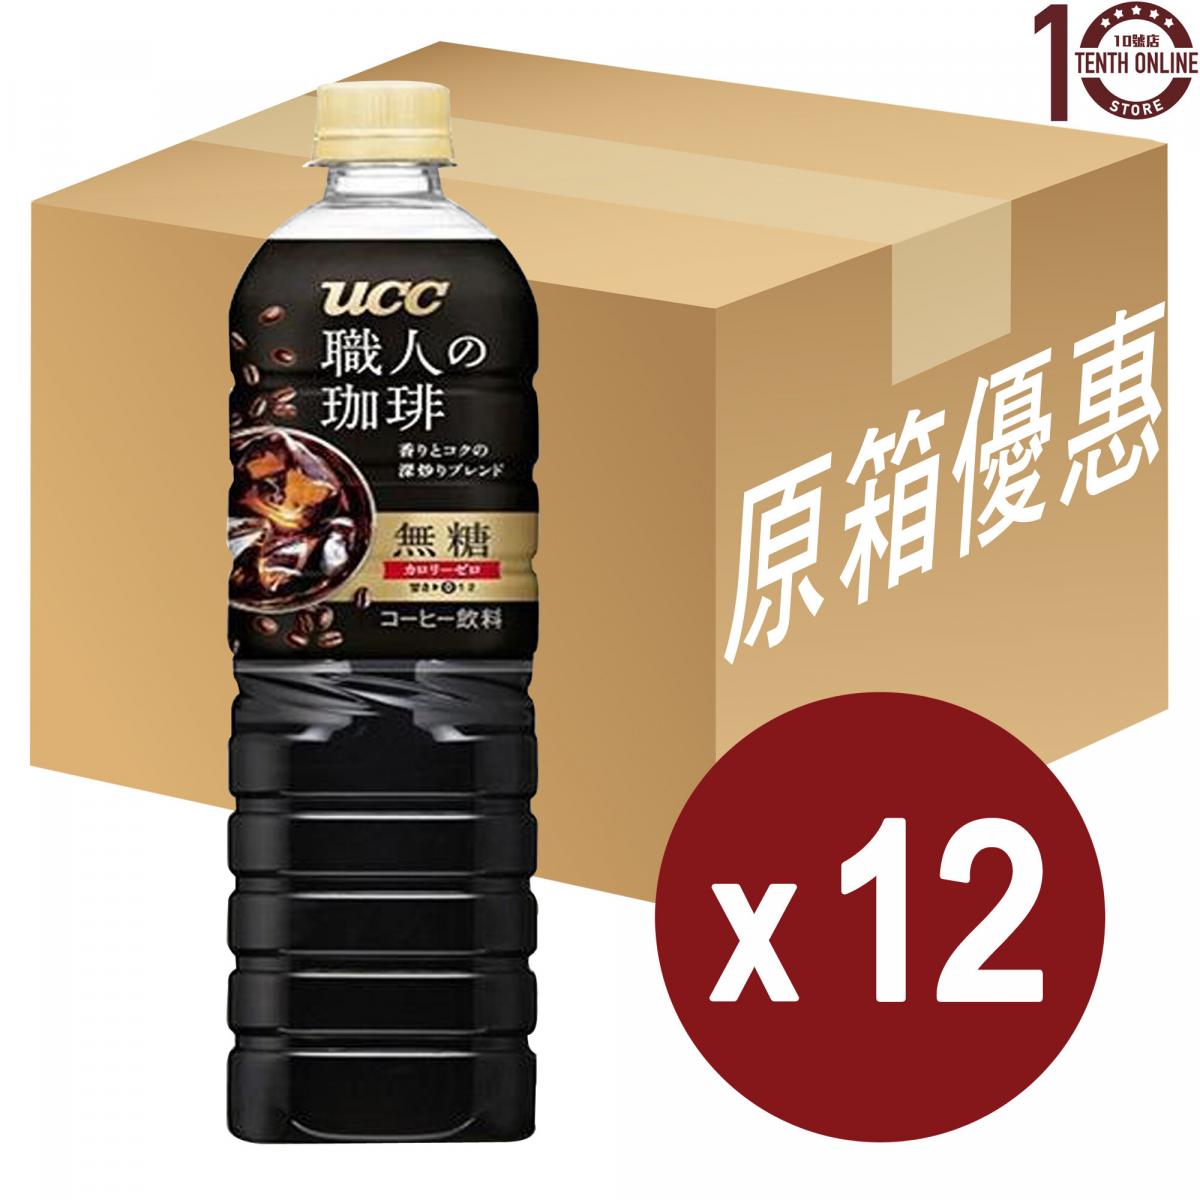 UCC 日本上島咖啡 - Black 職人深煎無糖黑咖啡(樽裝) - 原箱 900亳升